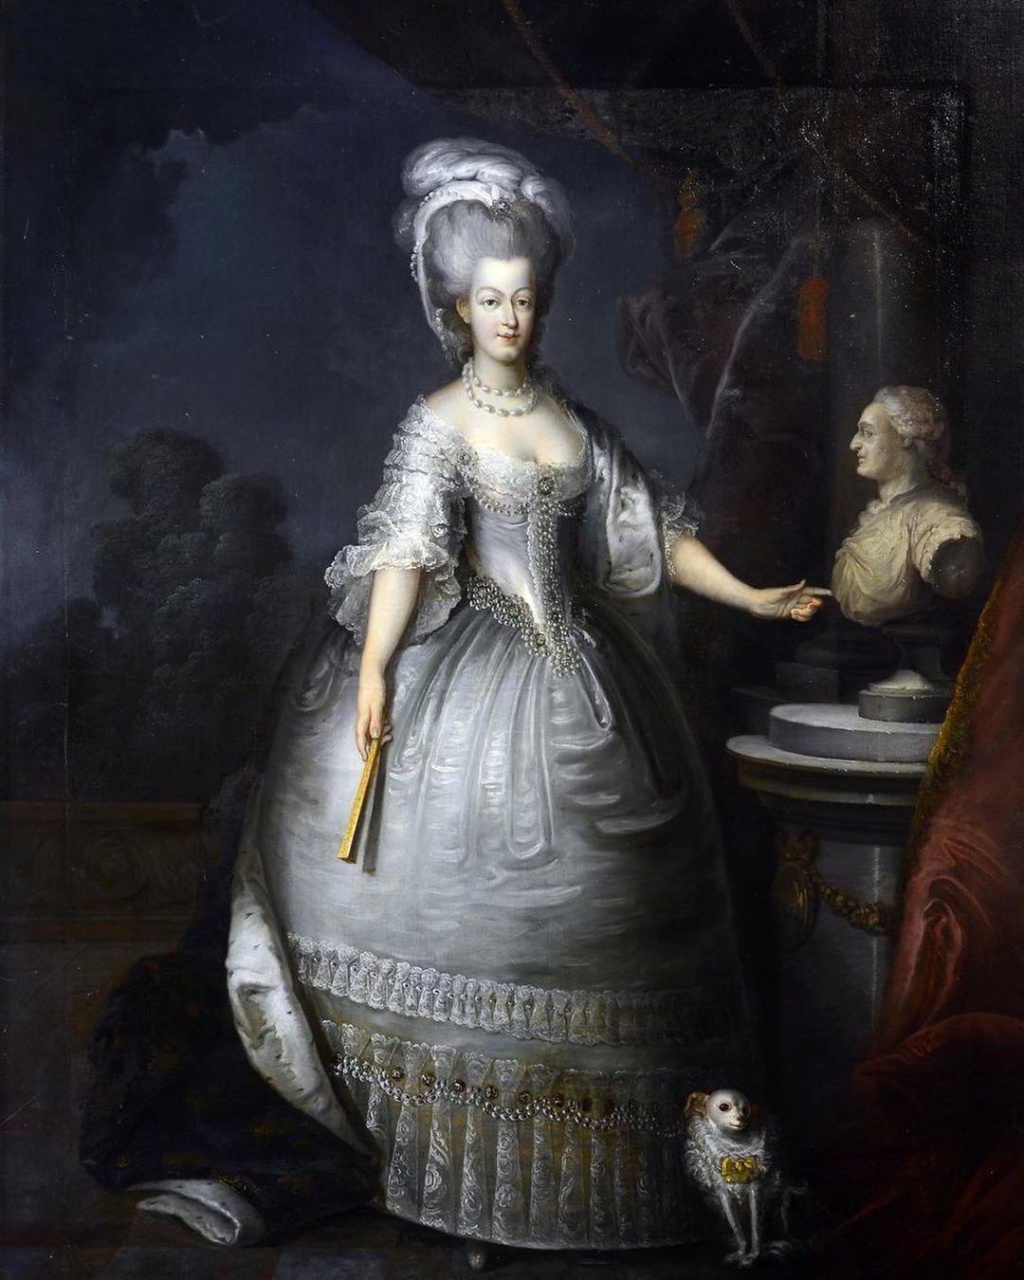 Portraits de Marie-Antoinette non attribués - Page 5 Mariea11